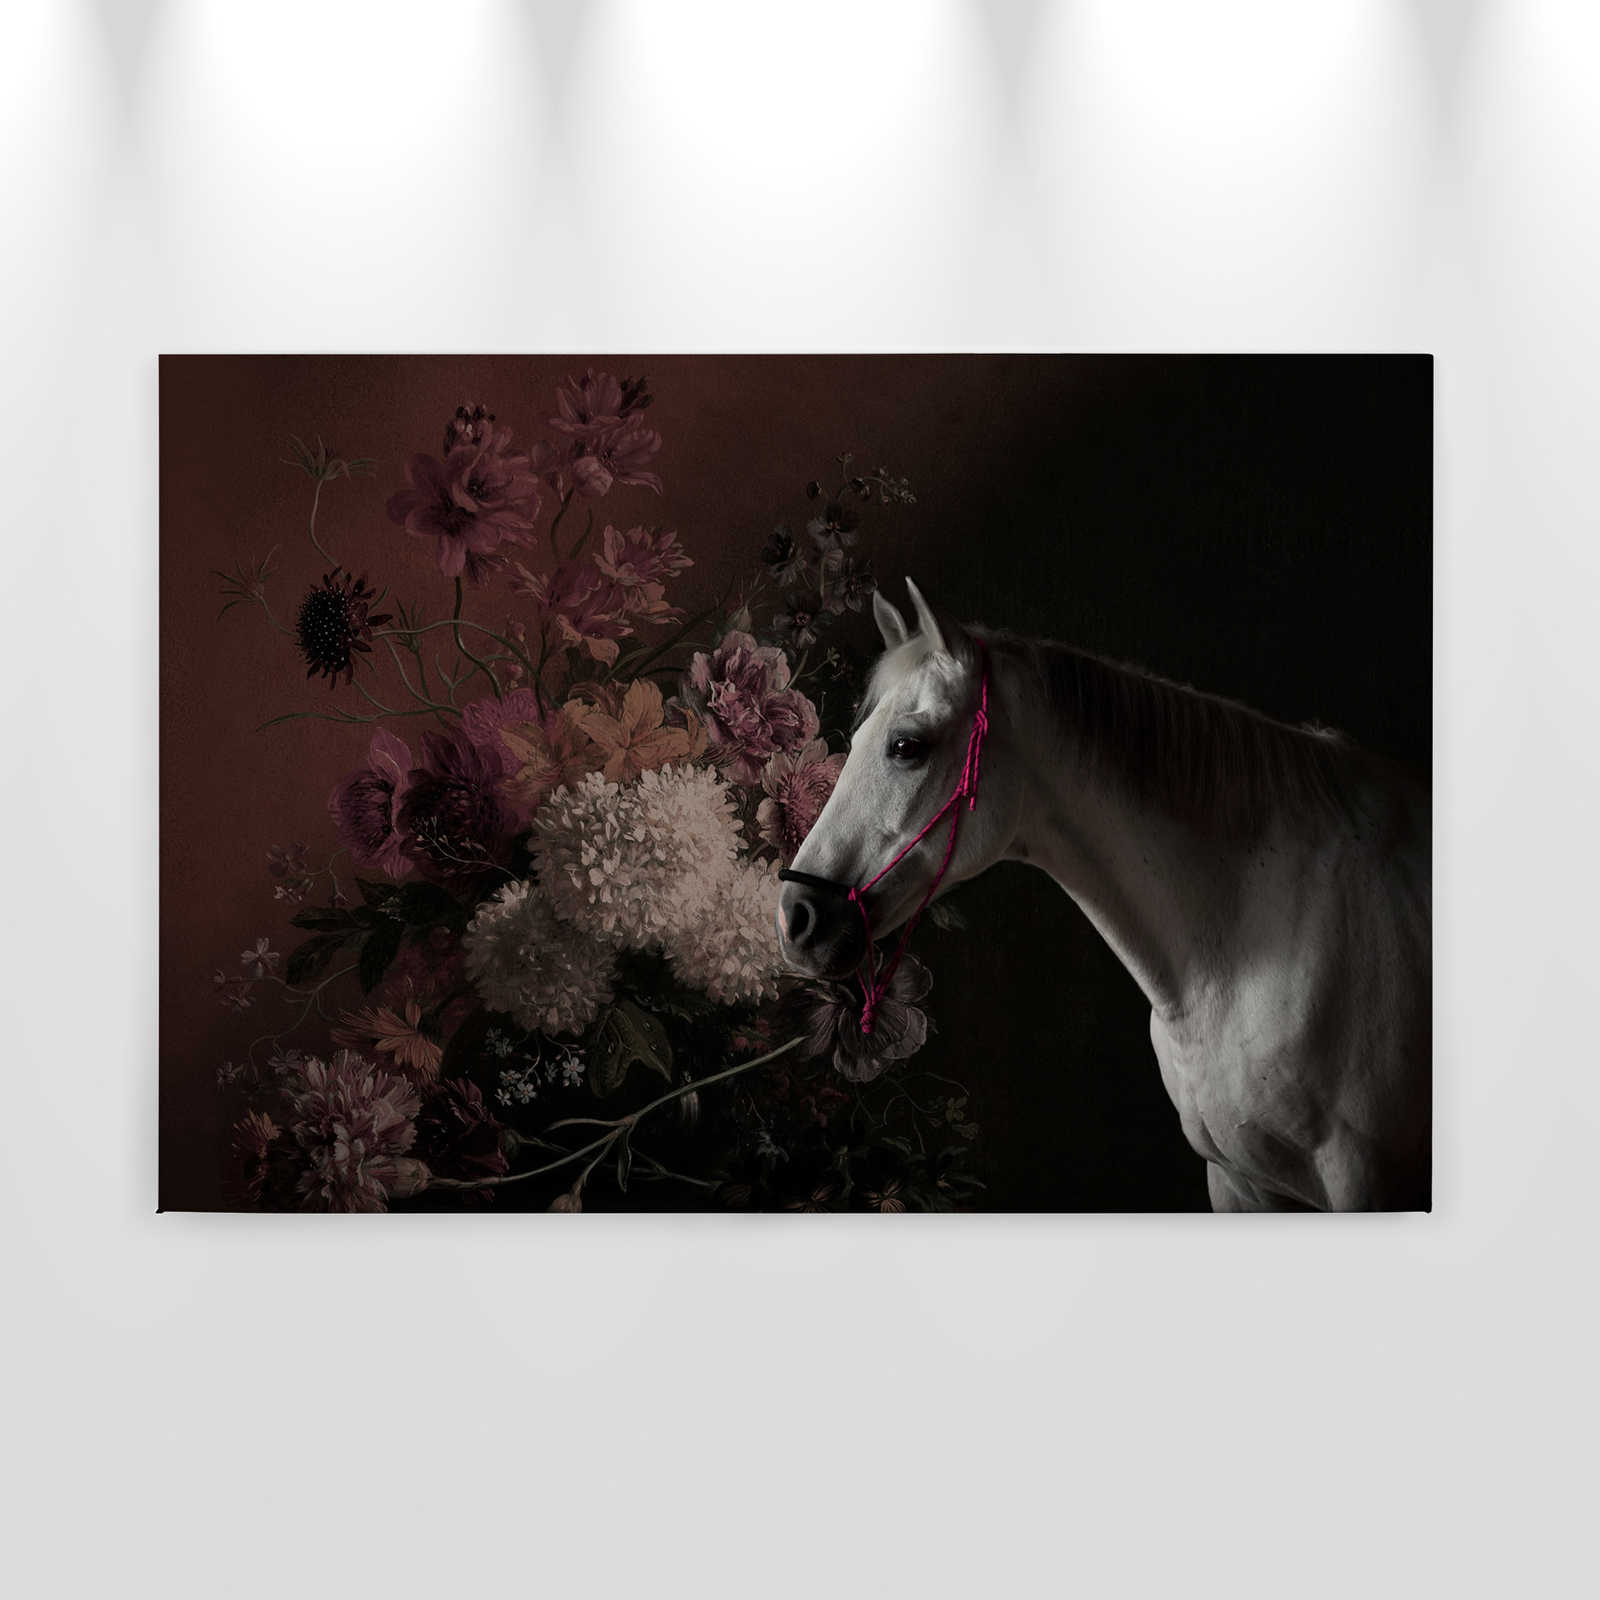             Canvas schilderij Paarden Portret met Bloemrijk - 0,90 m x 0,60 m
        